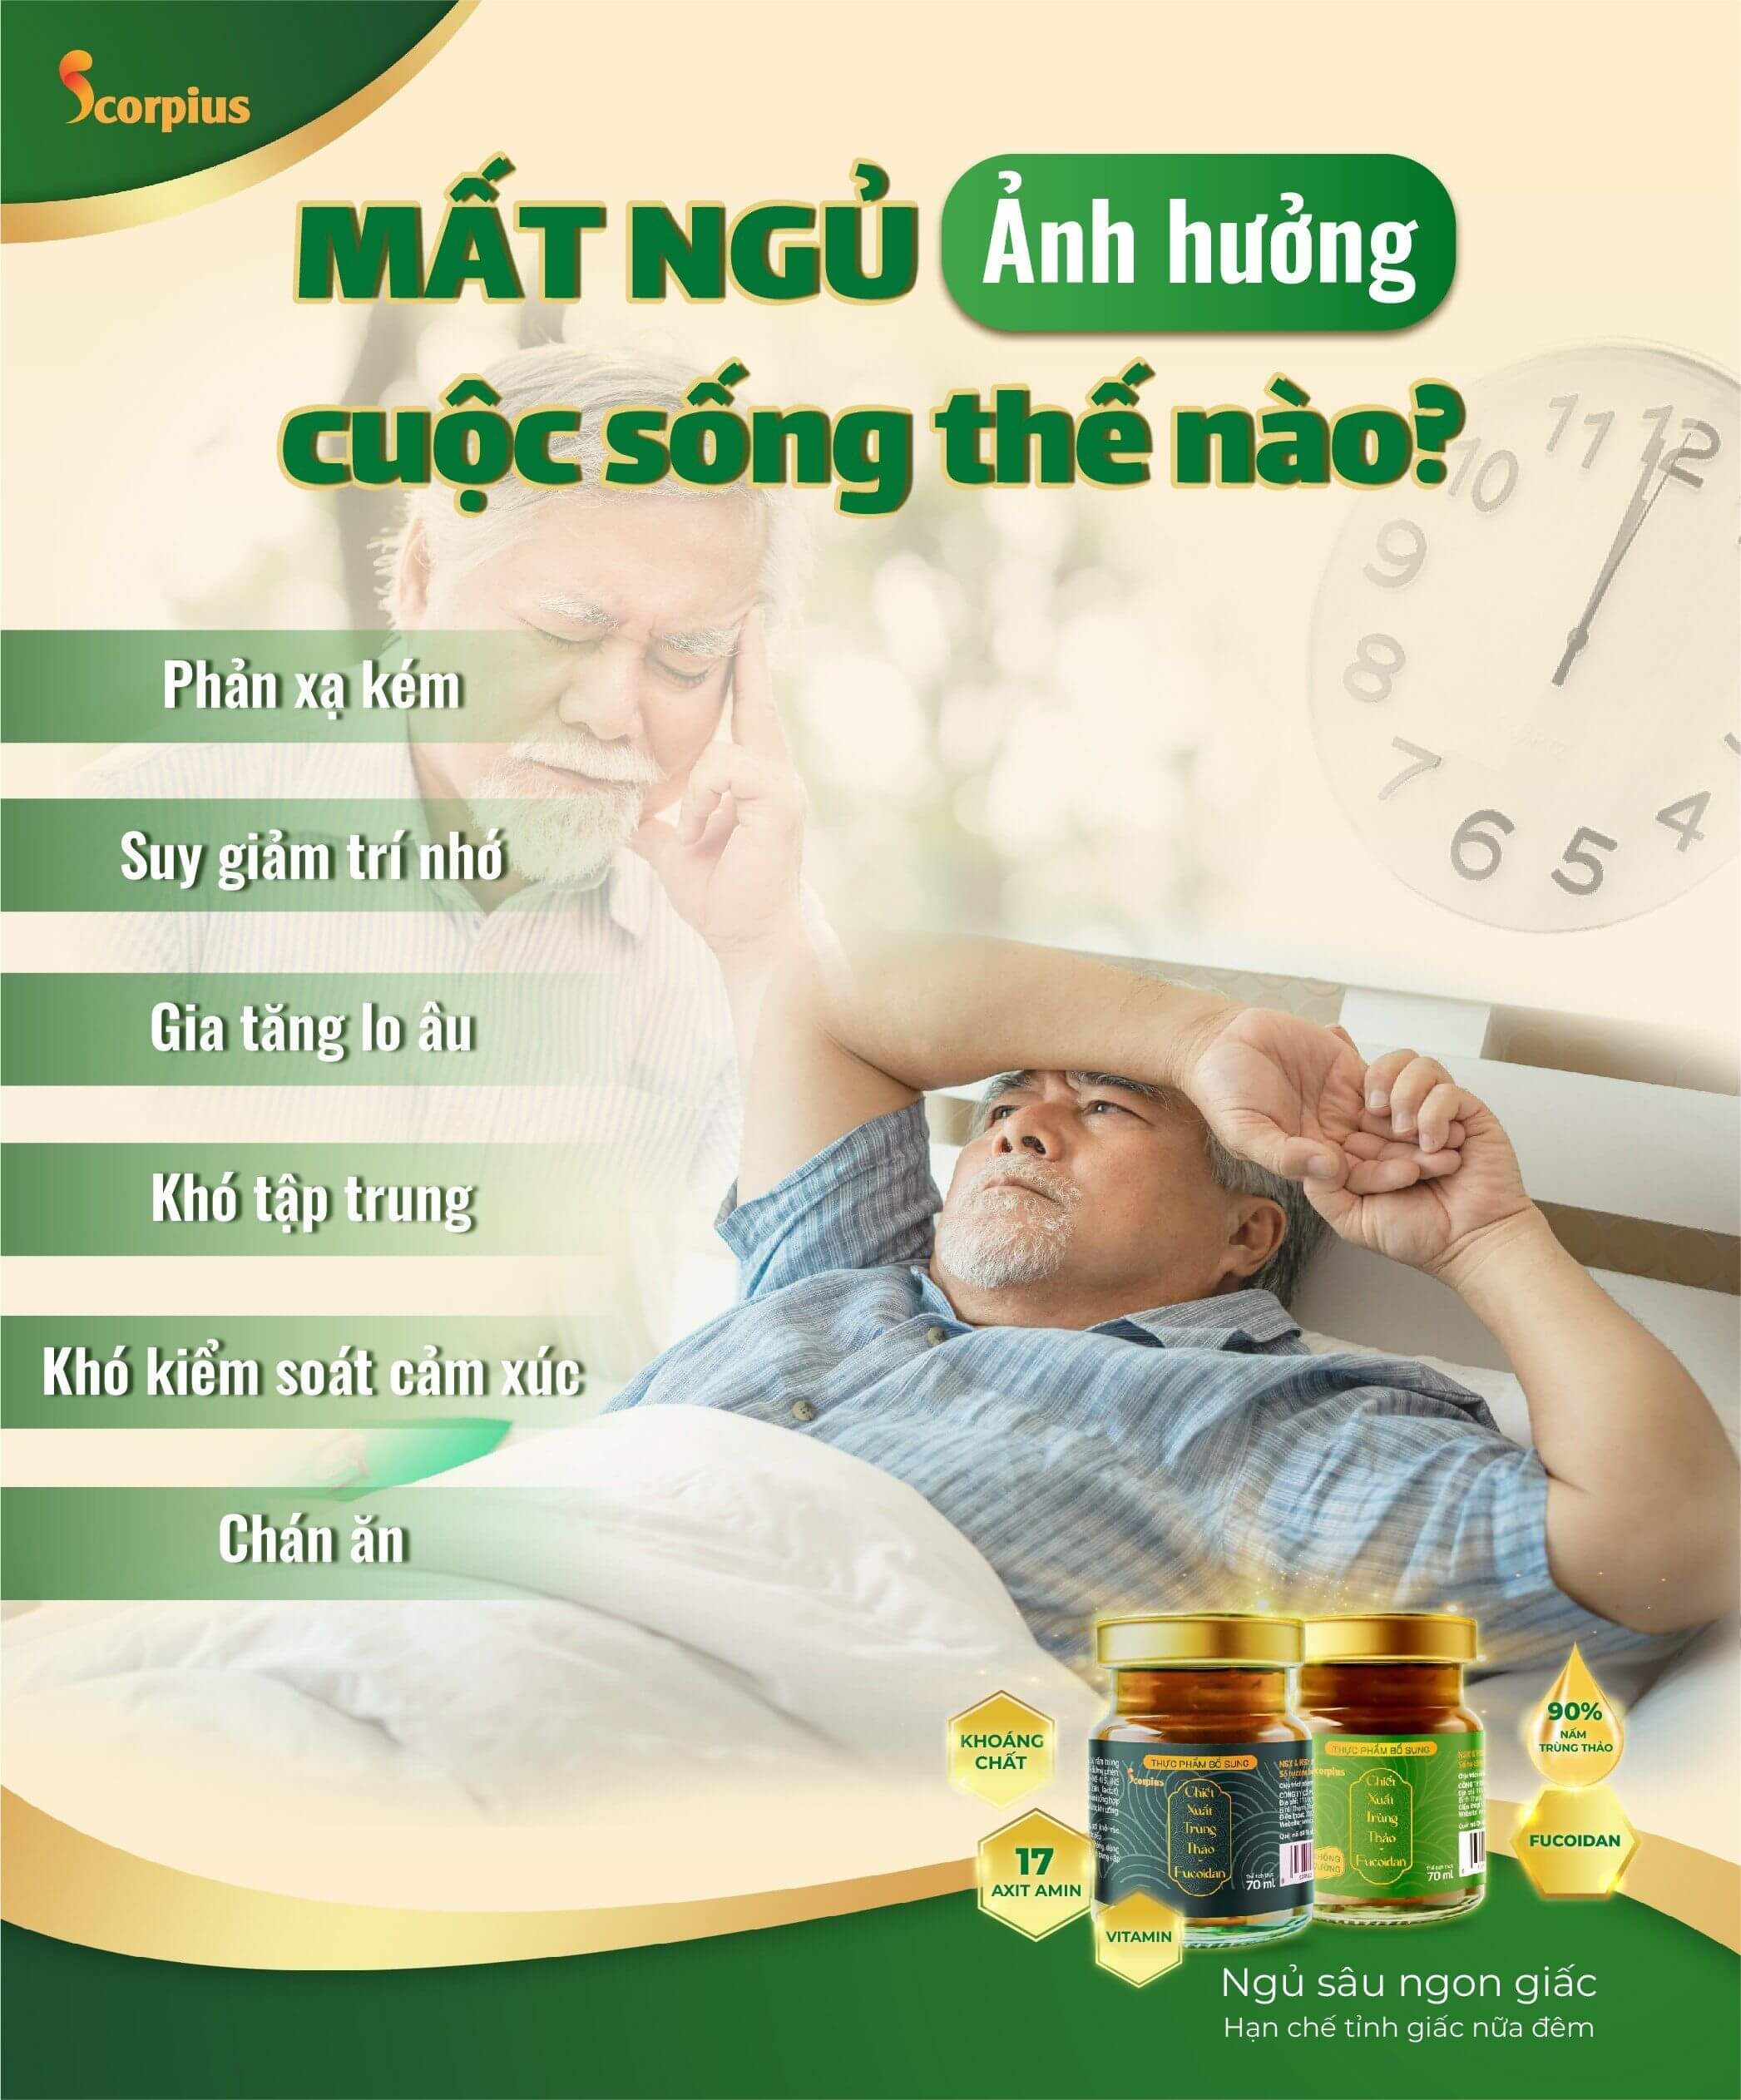 mat-ngu-anh-huong-the-nao-den-cuoc-song